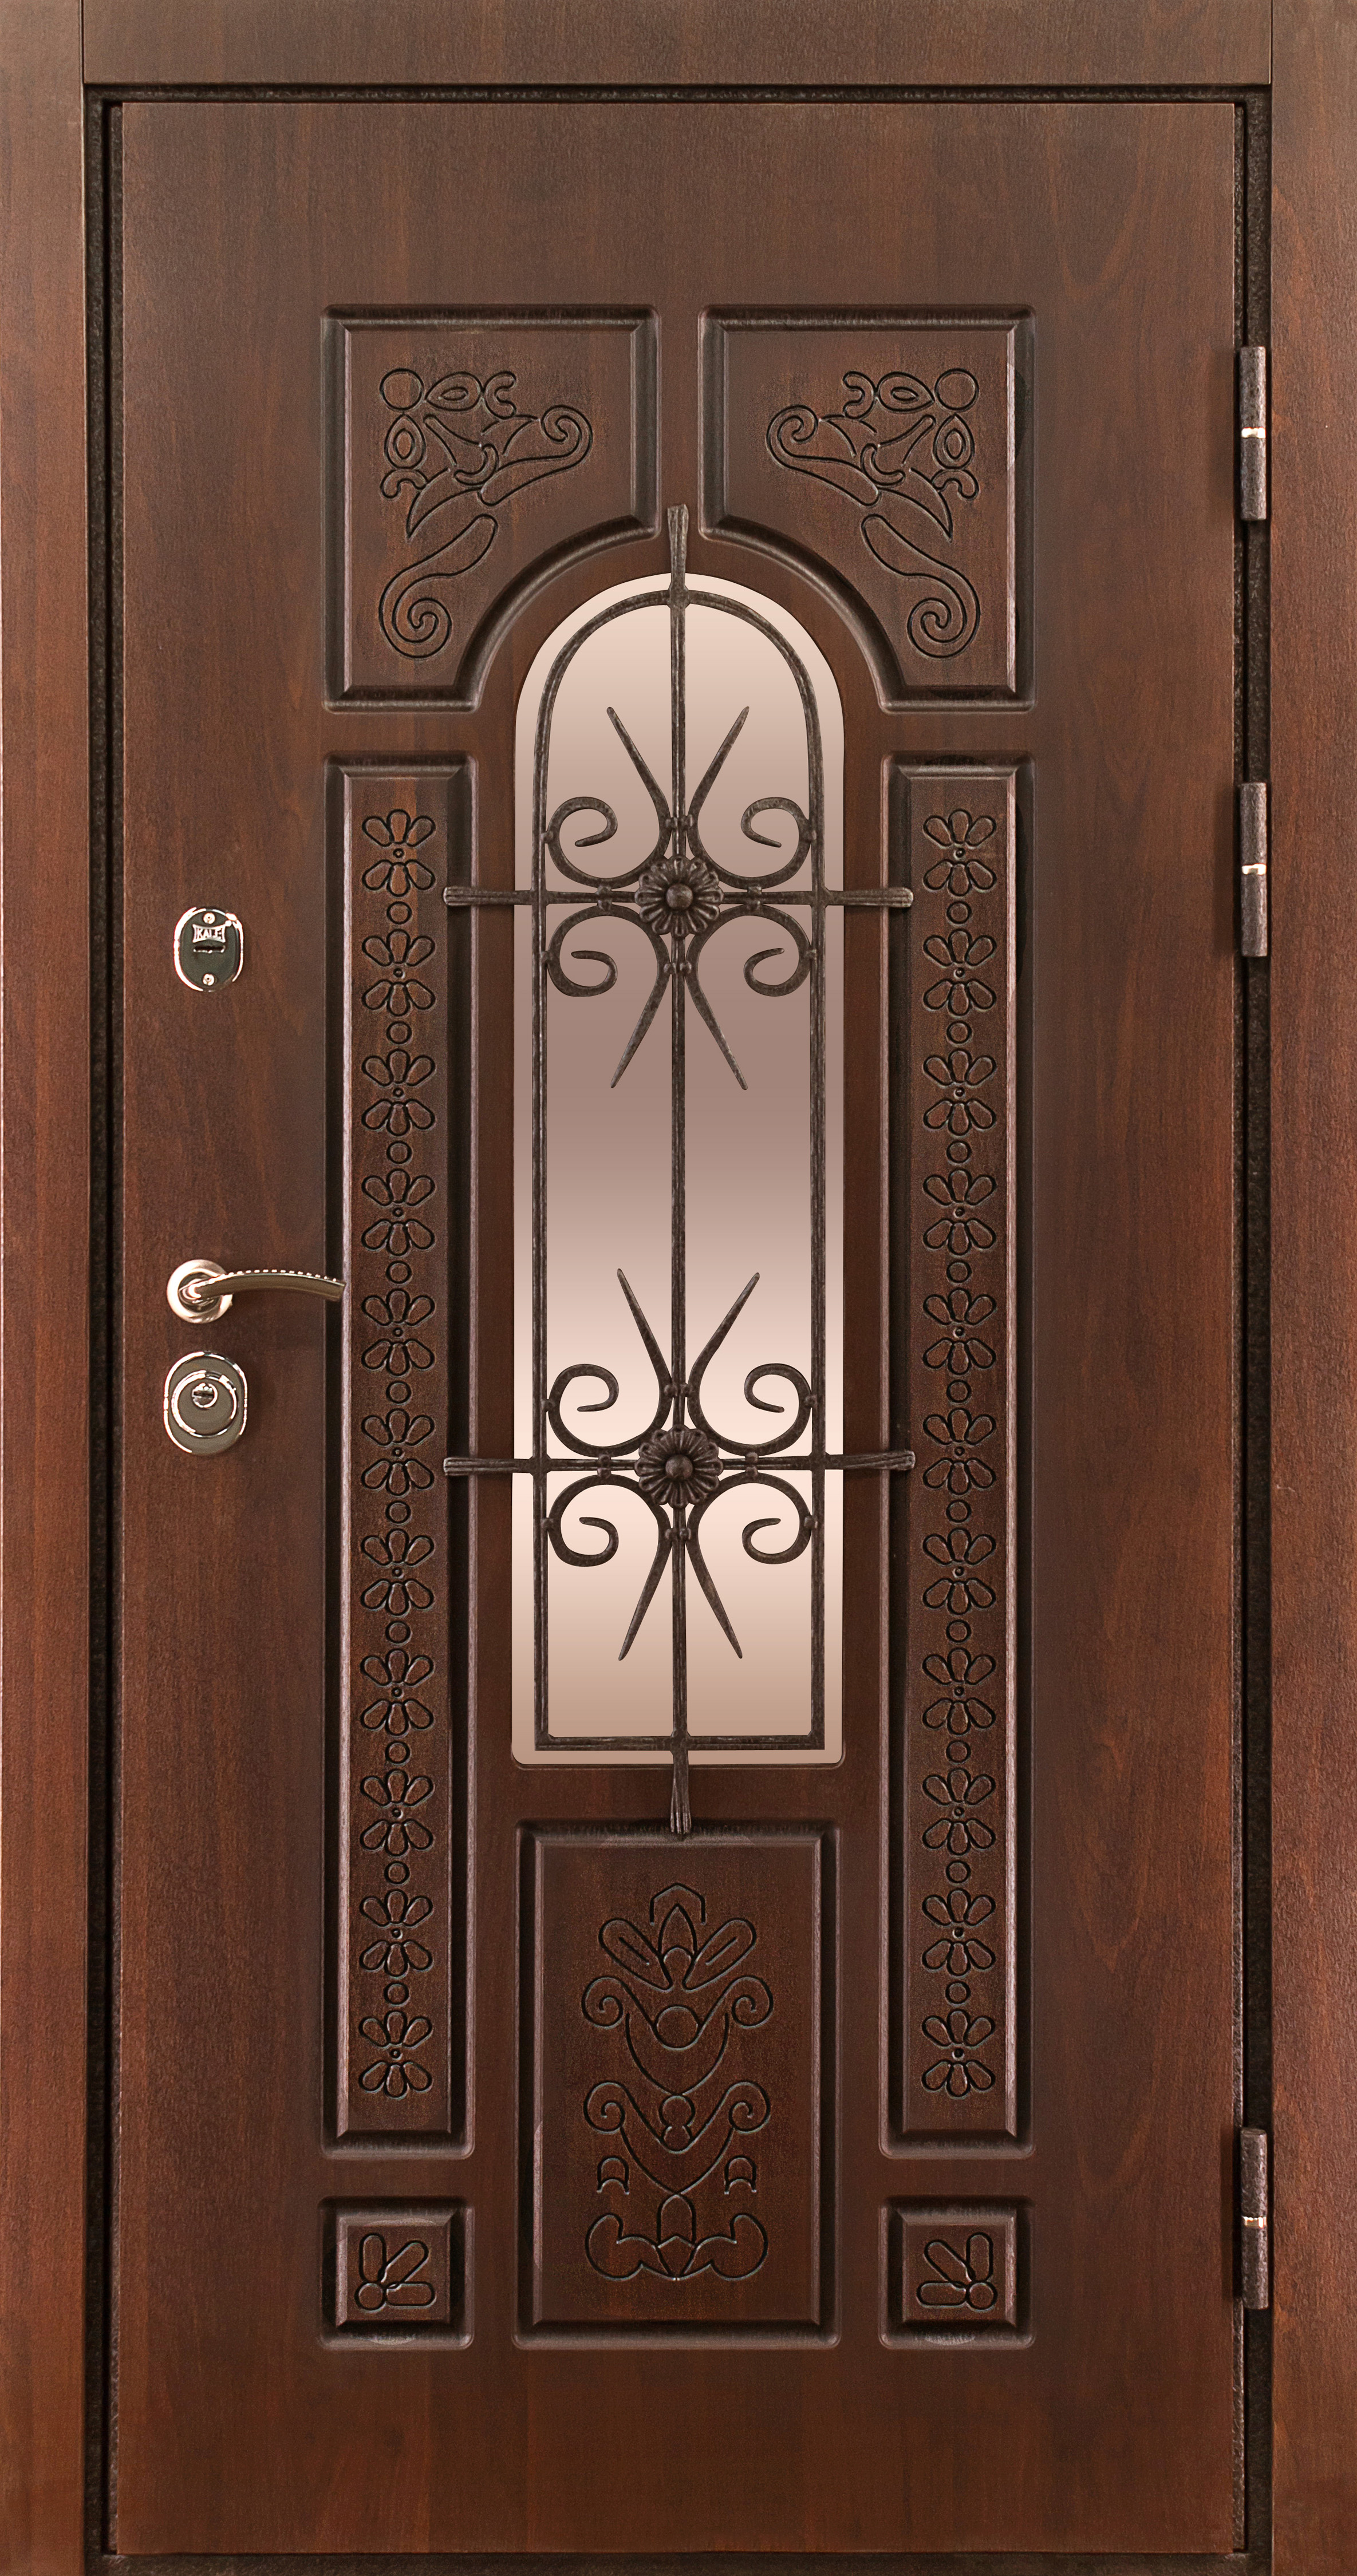 Наружная металлическая дверь МДФ, стеклопакет, решётка: панель МДФ